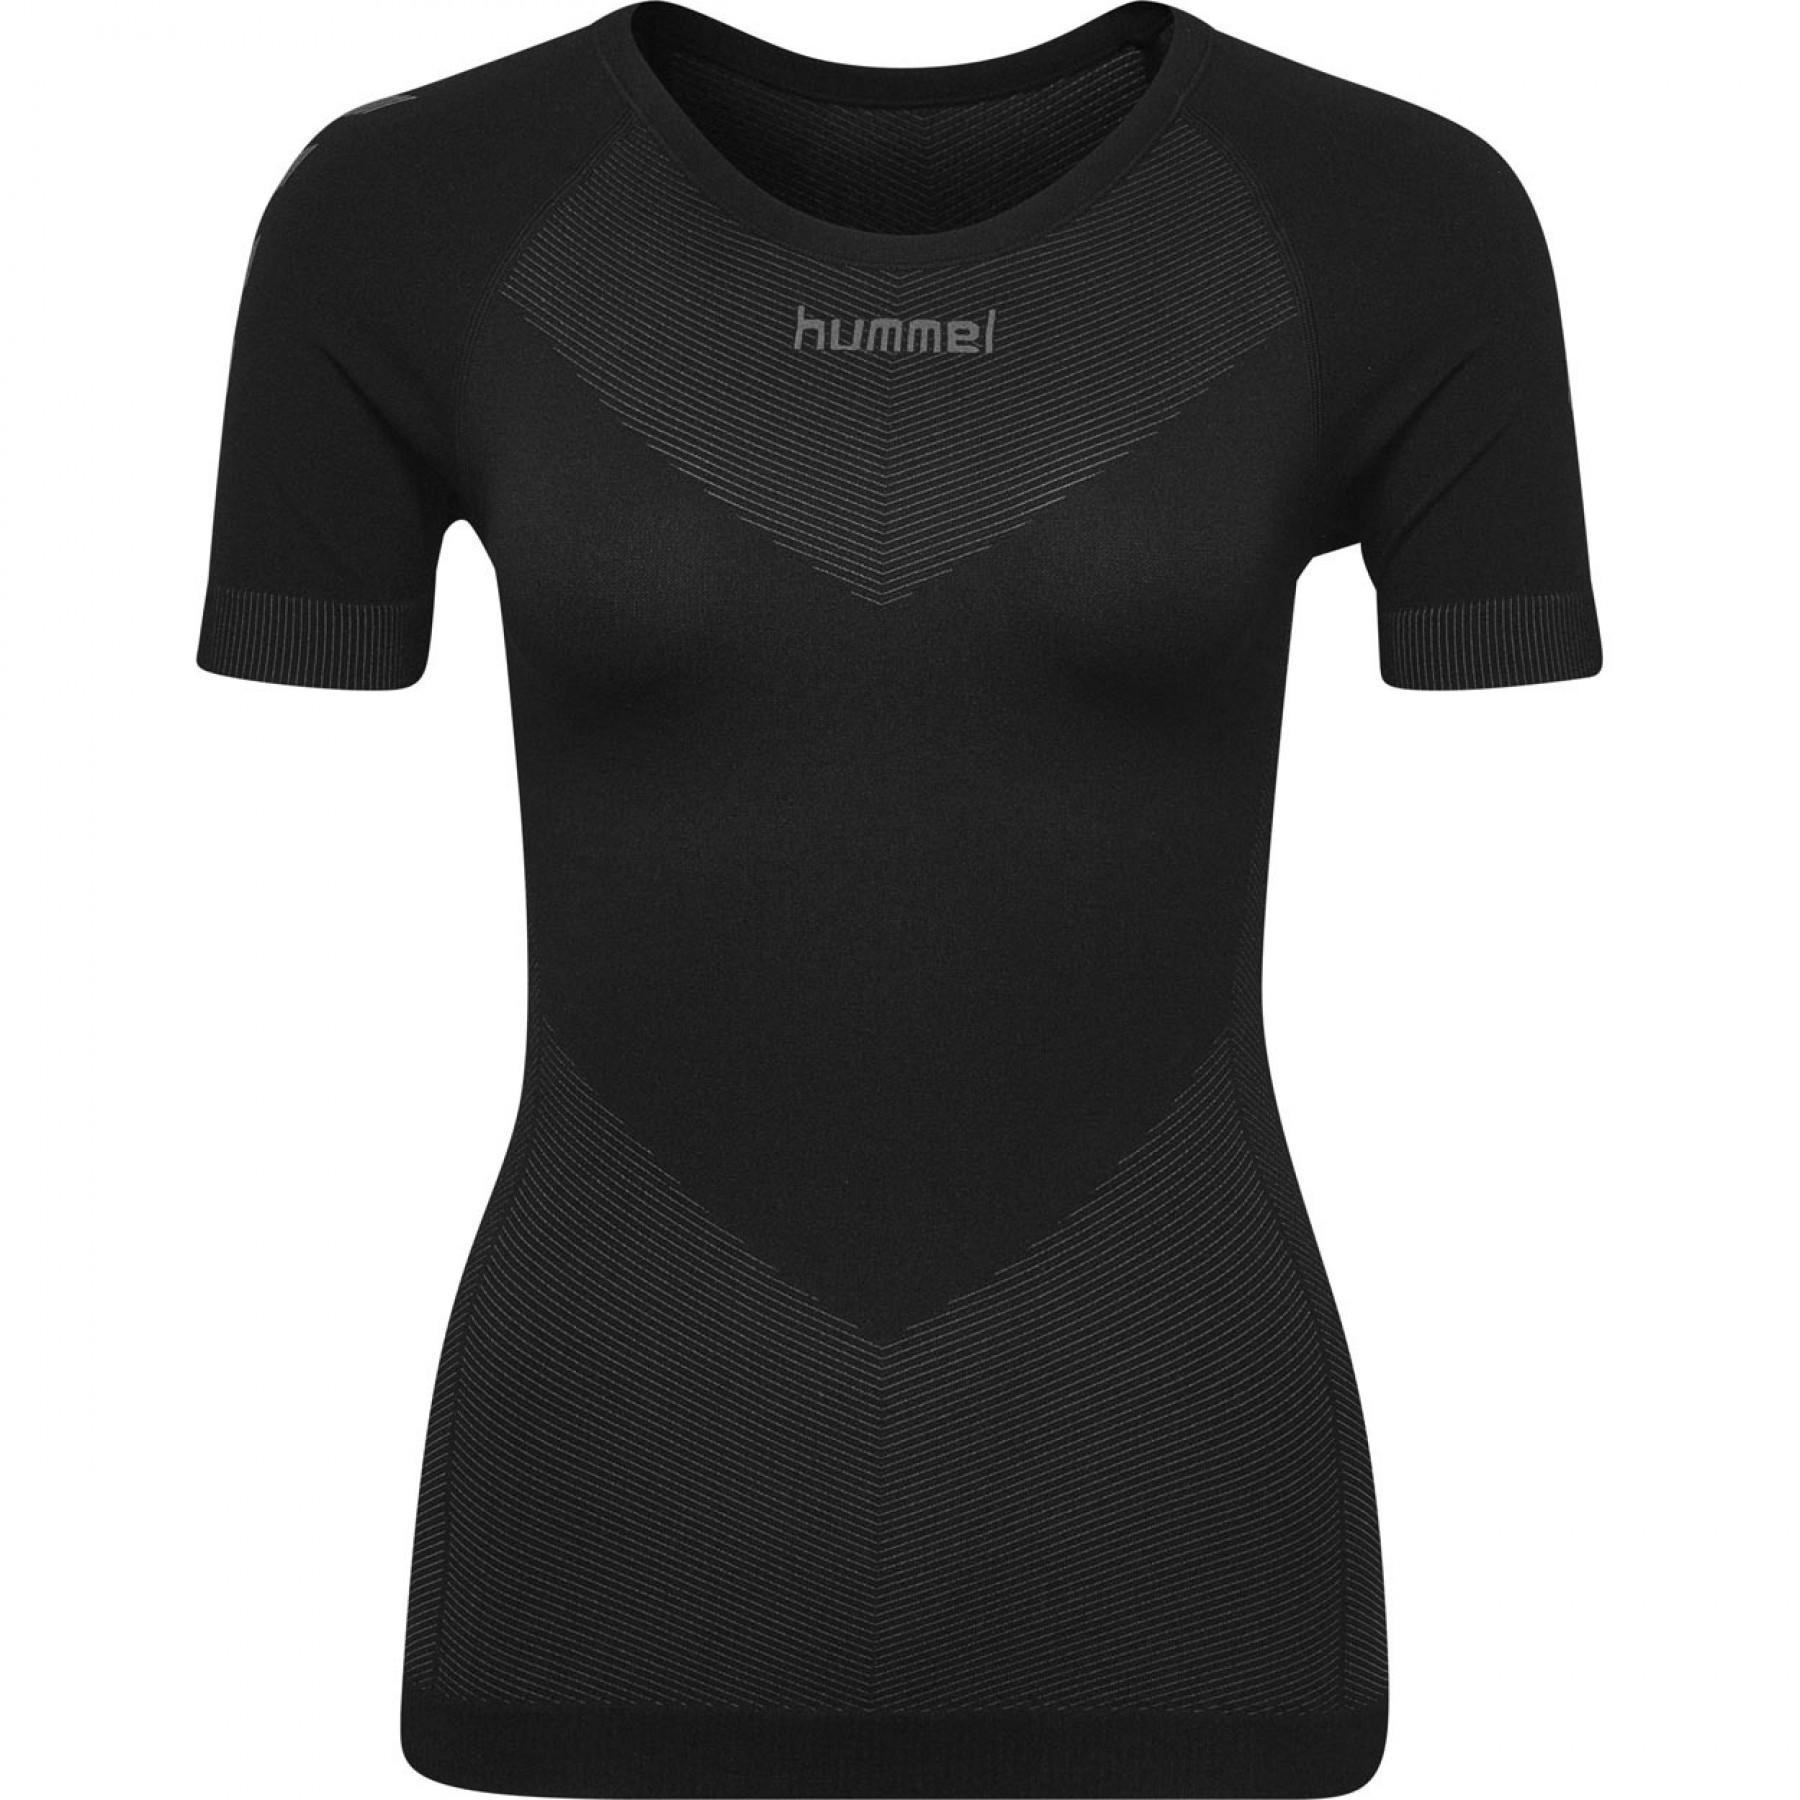 Jersey Hummel femme First Seamless - Jerseys - Women's wear - Slocog wear